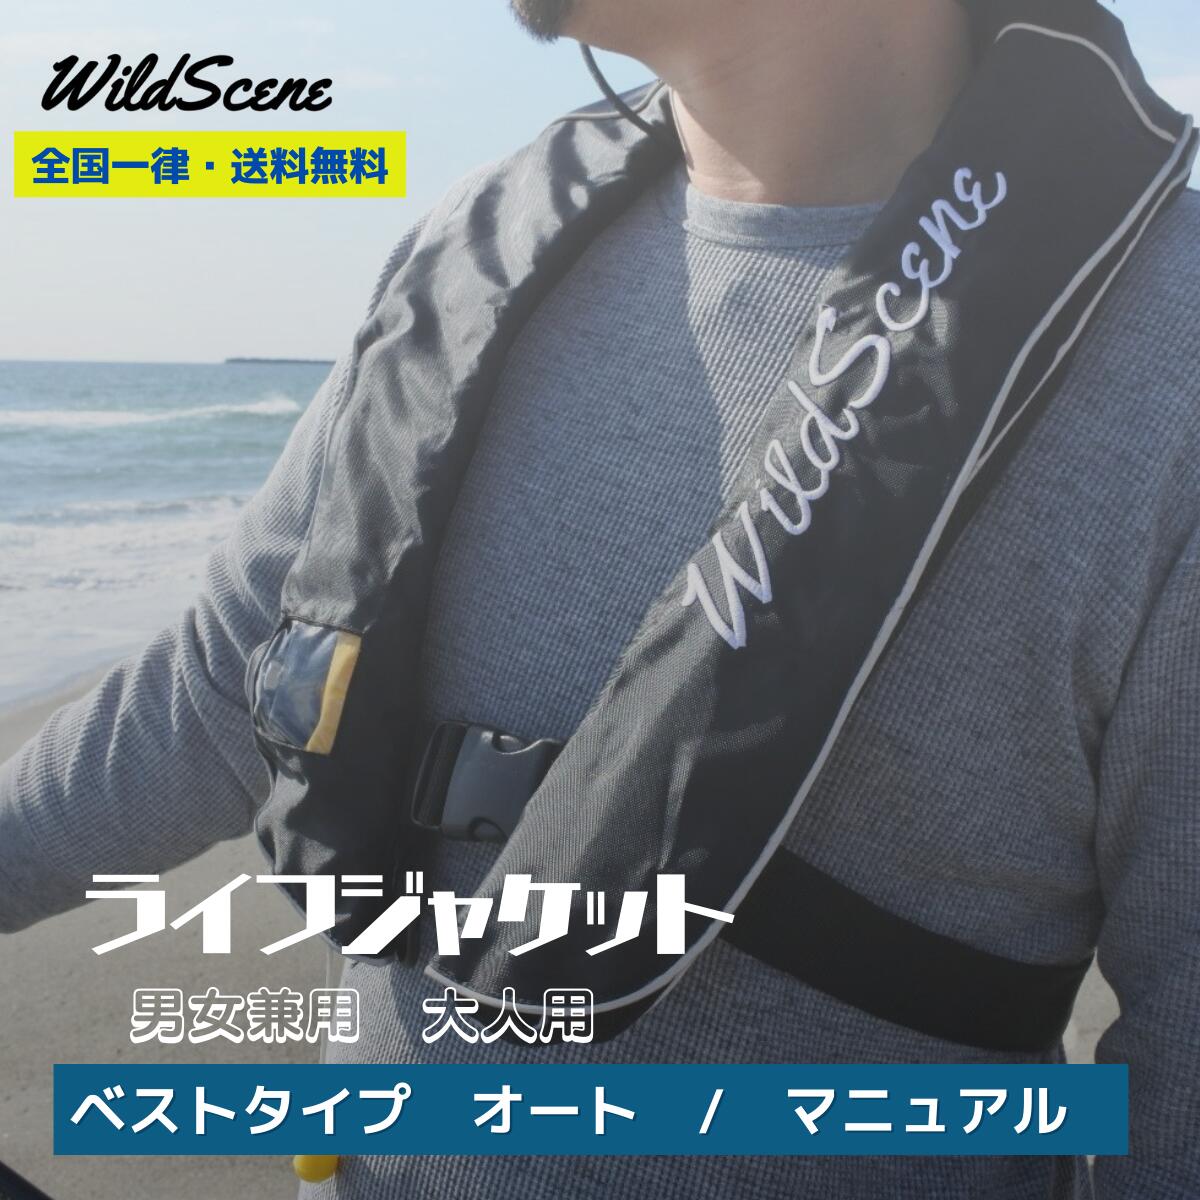 Wild Scene ライフジャケットベスト タイプ 大人 用CE認証取得 国内アフターサポート対応海 釣り 父の日